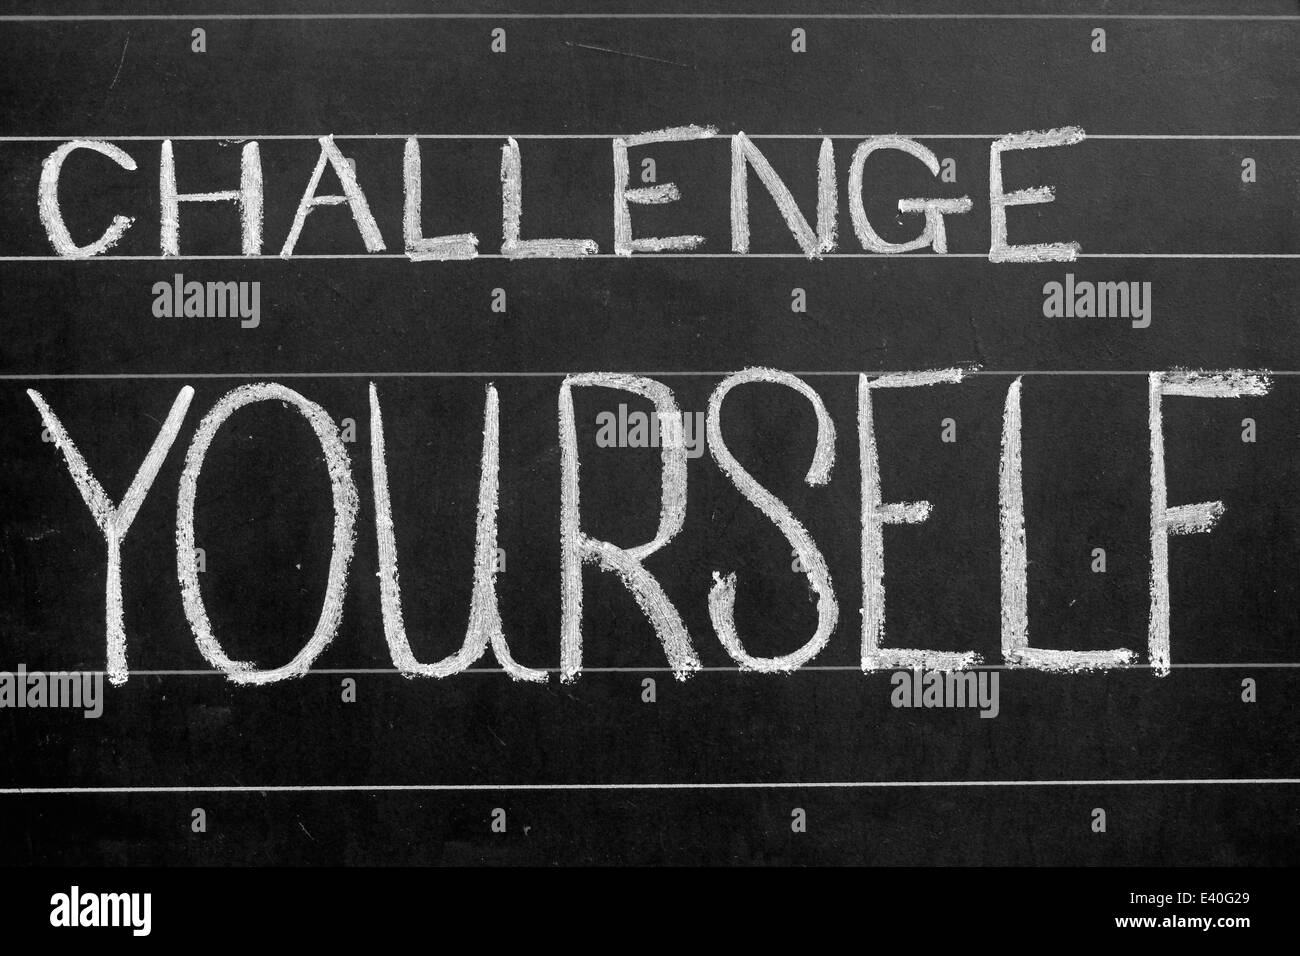 challenge yourself phrase handwritten on black chalkboard Stock Photo